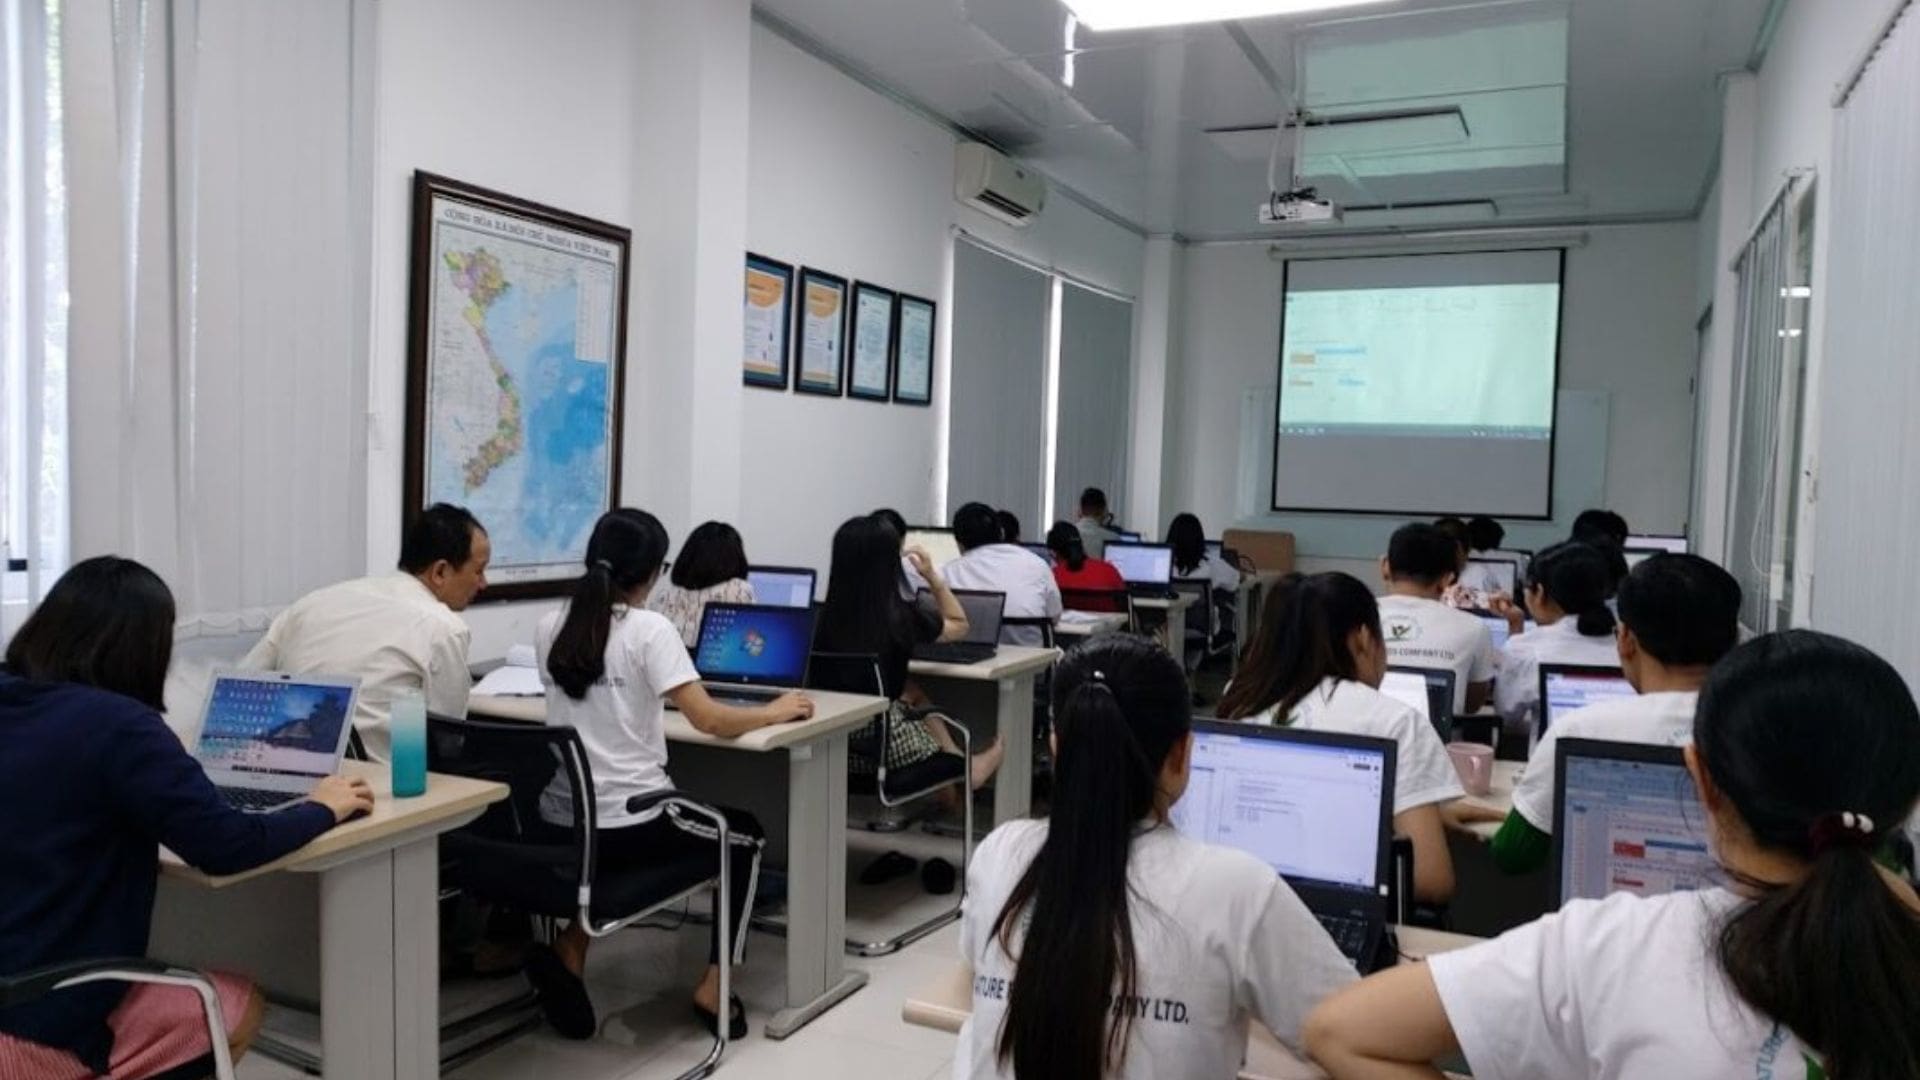 Trung tâm Tin học Việt Tin - Trung tâm học nghề Đà Nẵng